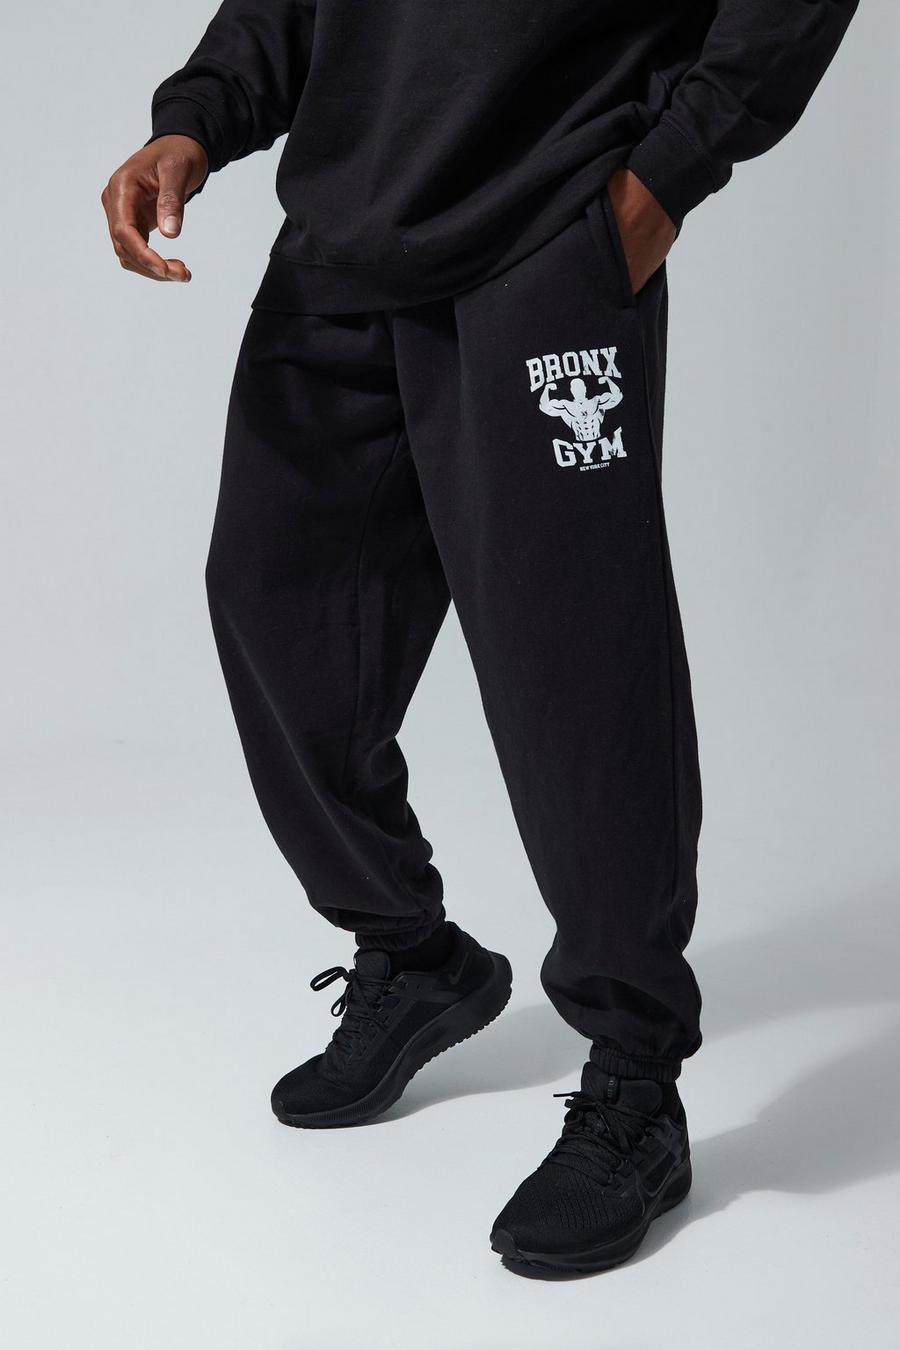 Pantalón deportivo MAN Active oversize con estampado de Bronx para el gimnasio, Black